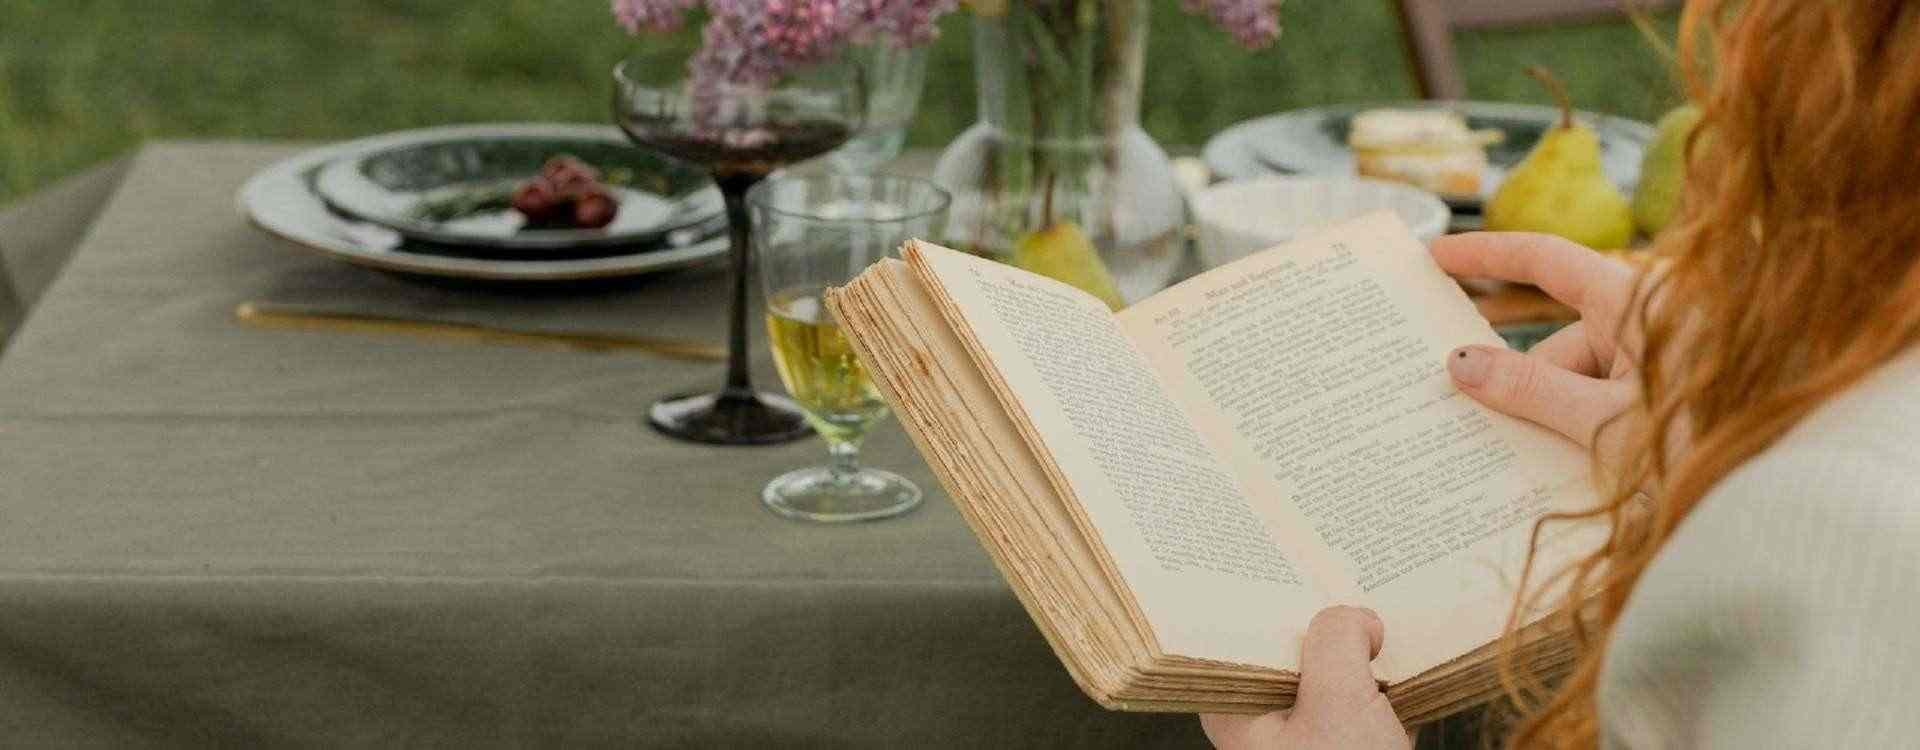 Cosa regalare quando si è invitati a cena? Un libro!